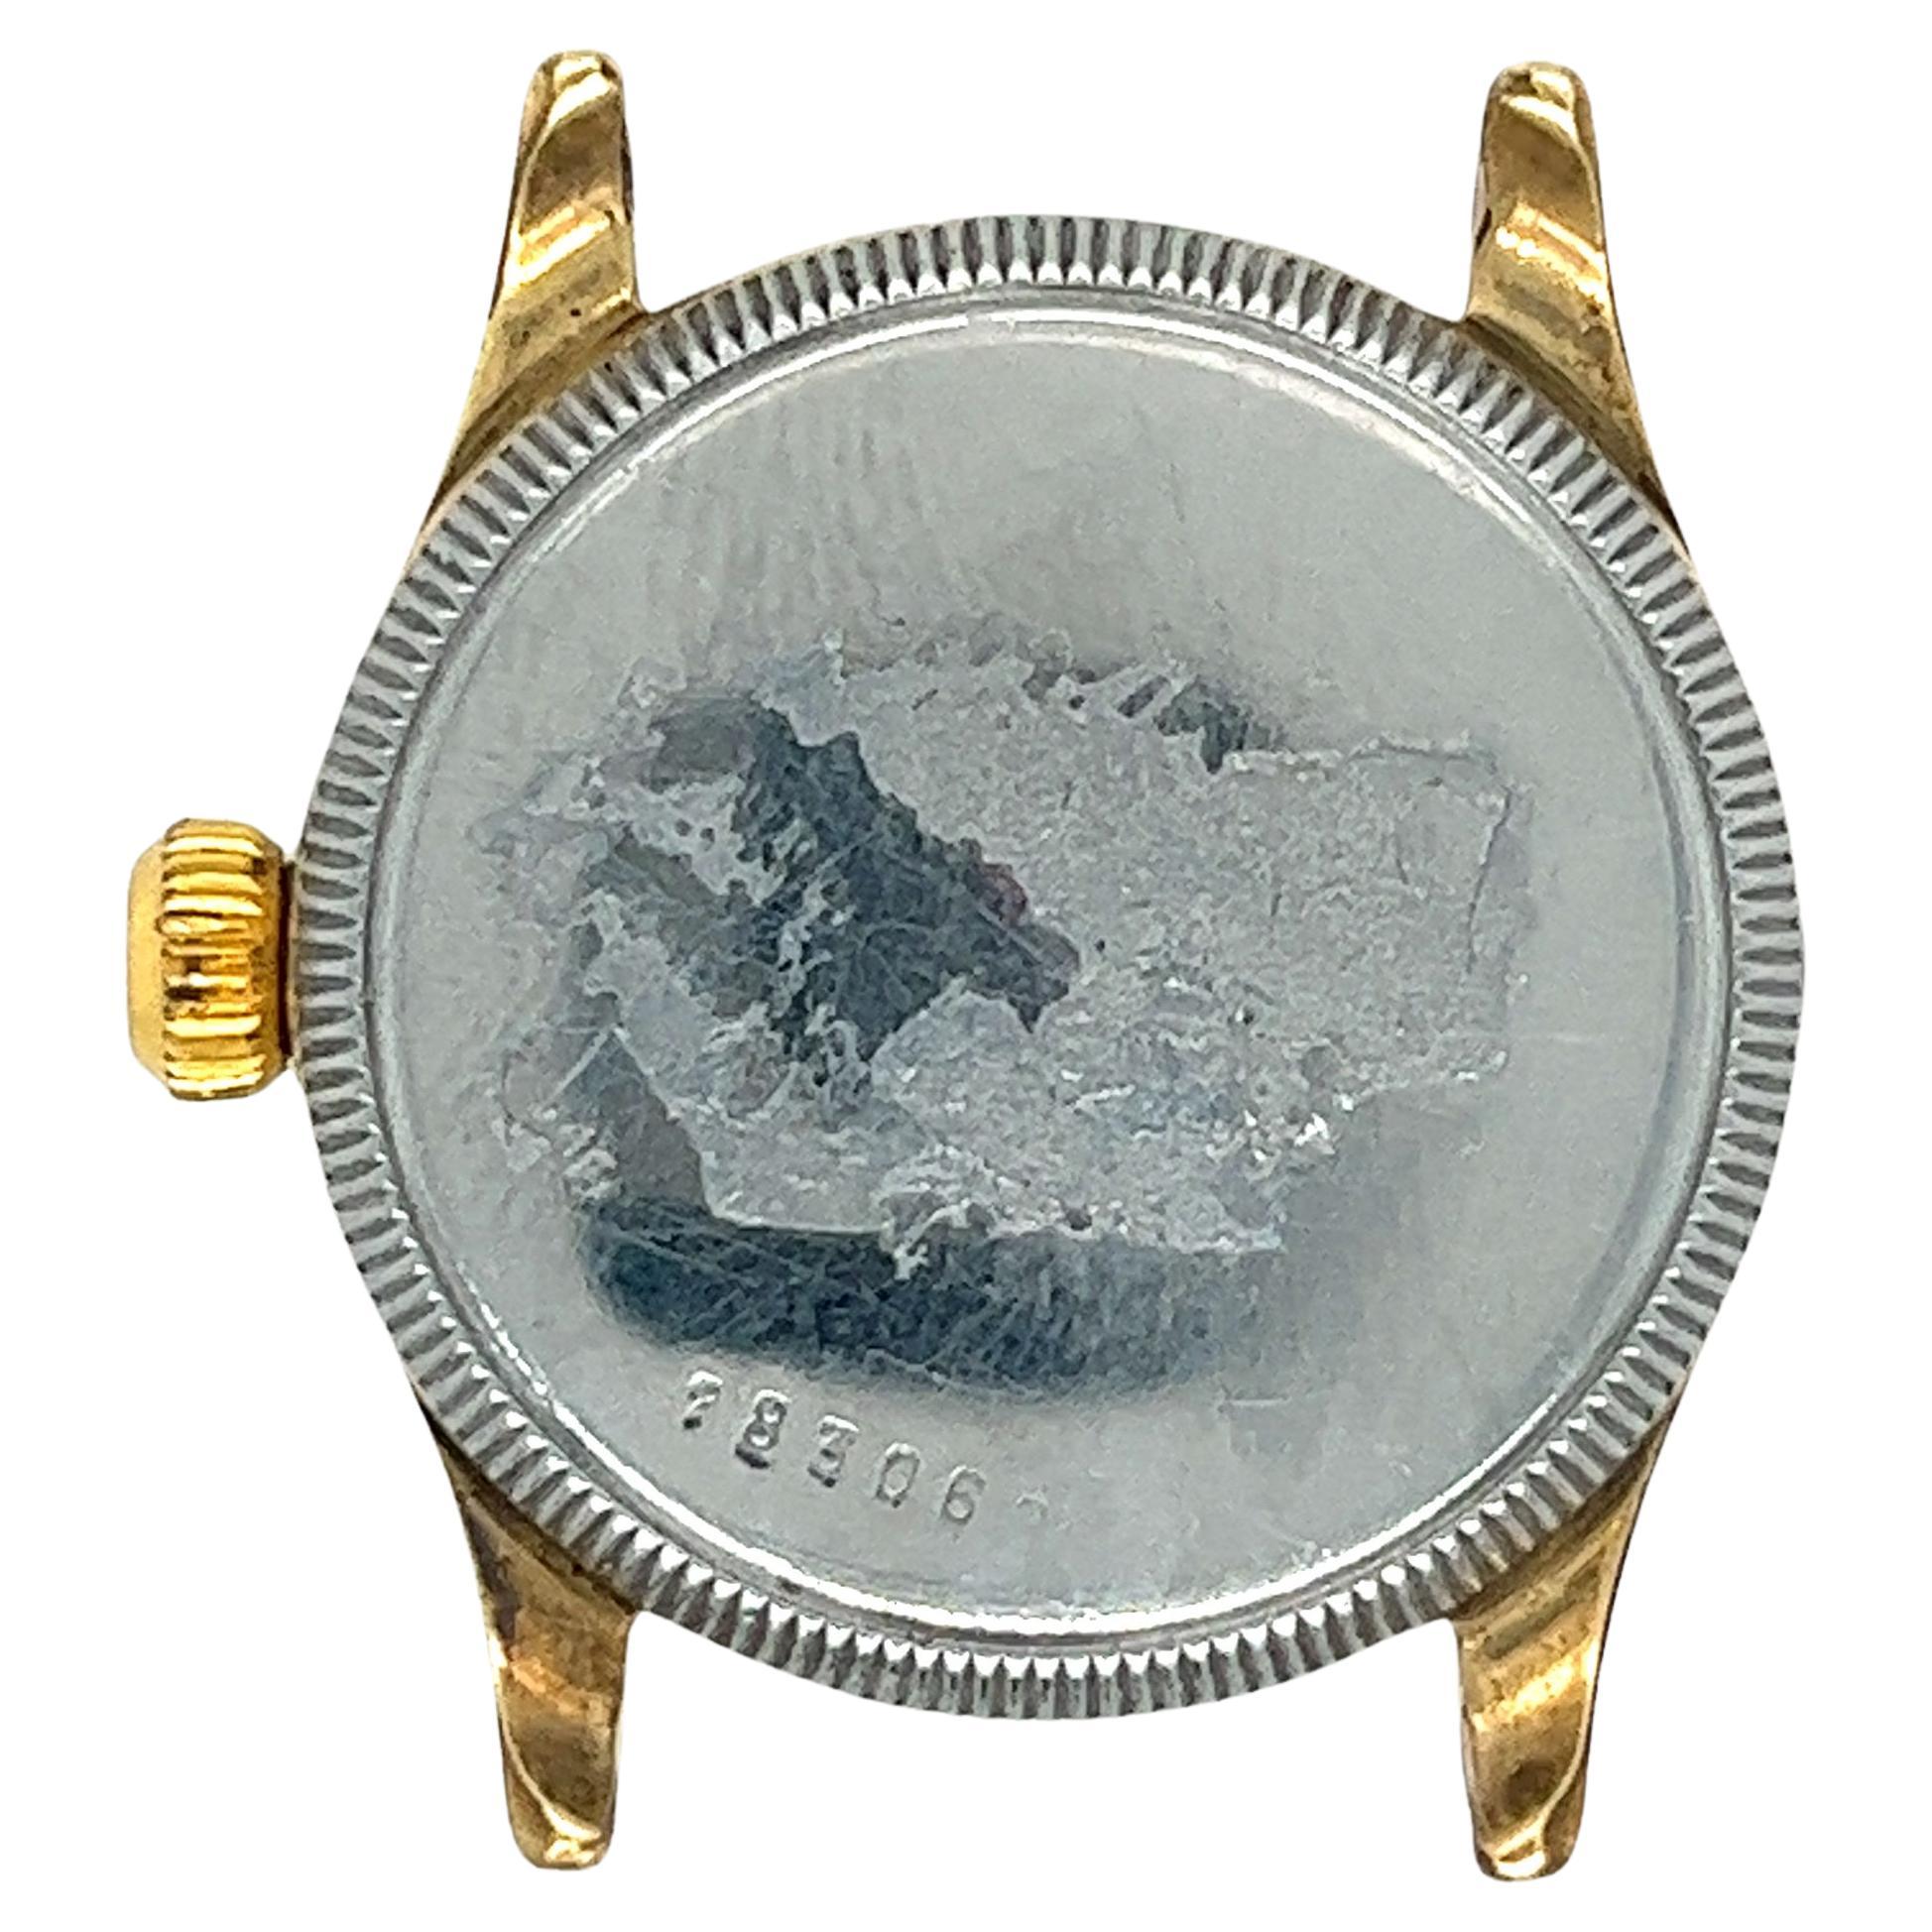 Voici une pièce d'histoire rare et étonnante : une ancienne montre Rolex Oyster Pioneer à remontage manuel. Avec son cadran de 28 mm, son mouvement à remontage manuel, son chronographe des secondes et son état impeccable, ce garde-temps est un